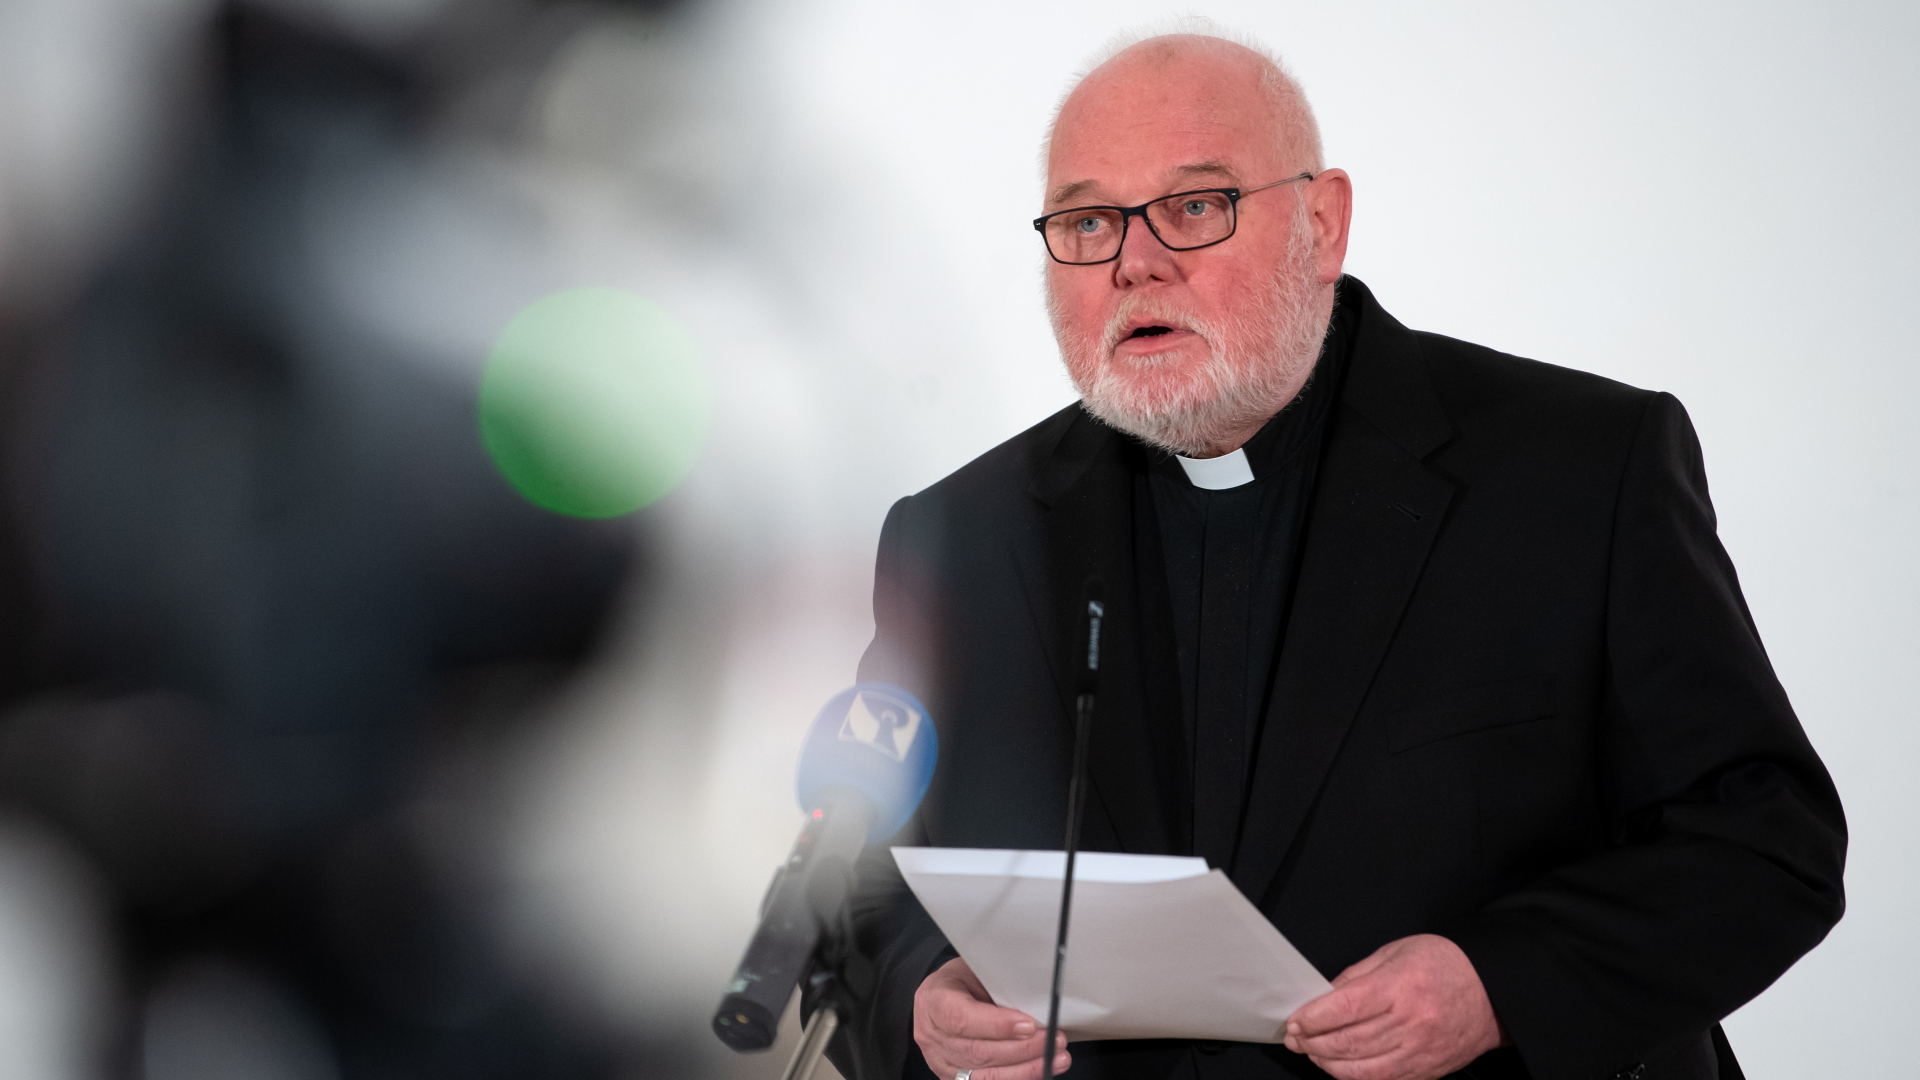 Kardinal Reinhard Marx gibt nach der Vorstellung eines Gutachtens zu Fällen von sexuellem Missbrauch im katholischen Erzbistum München und Freising ein Pressestatement. | dpa